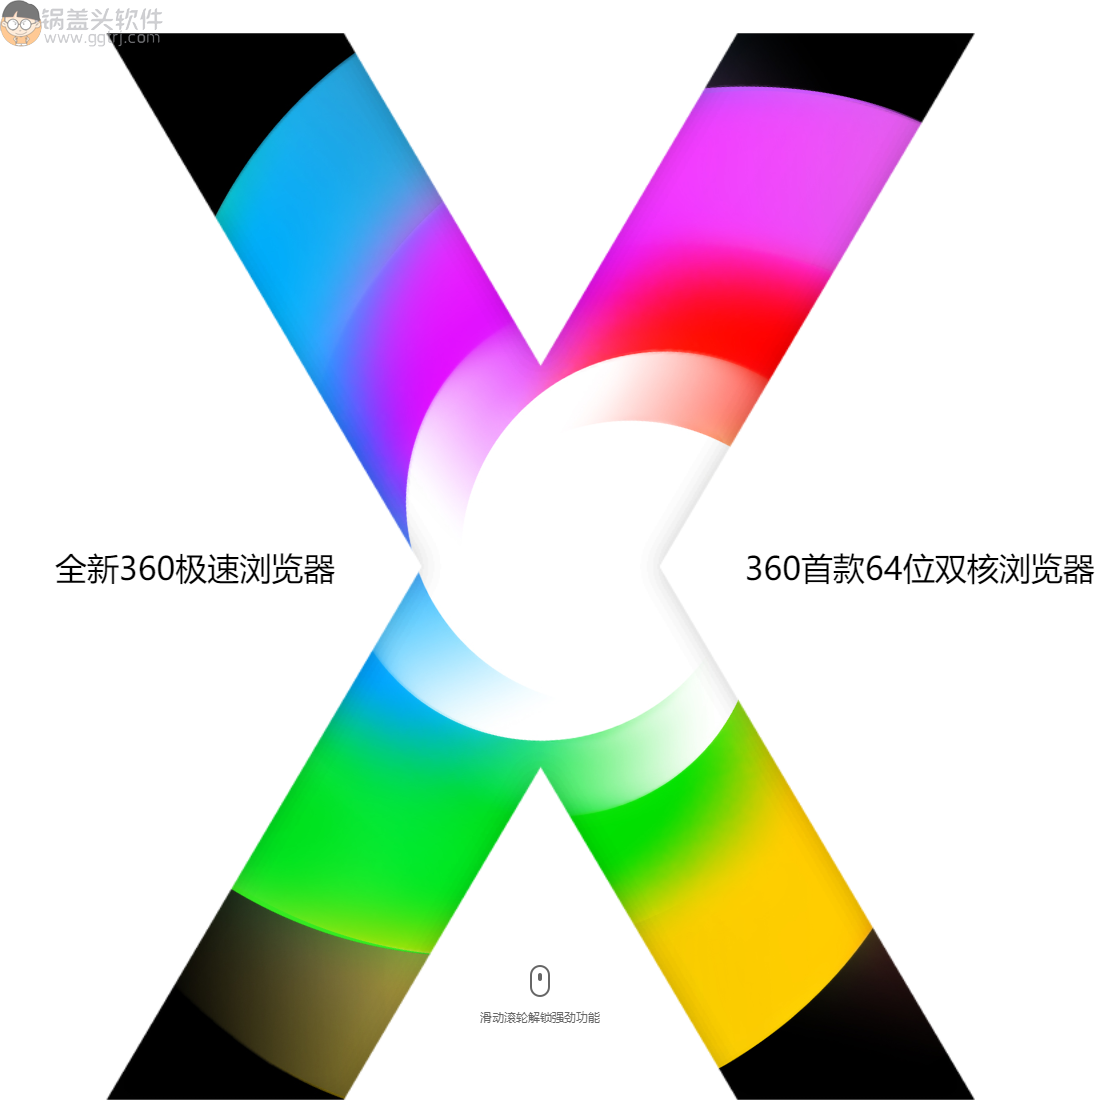 360极速浏览器X-v21.0.1167.0 _绿色便携版,最新360极速浏览器,浏览器,第1张